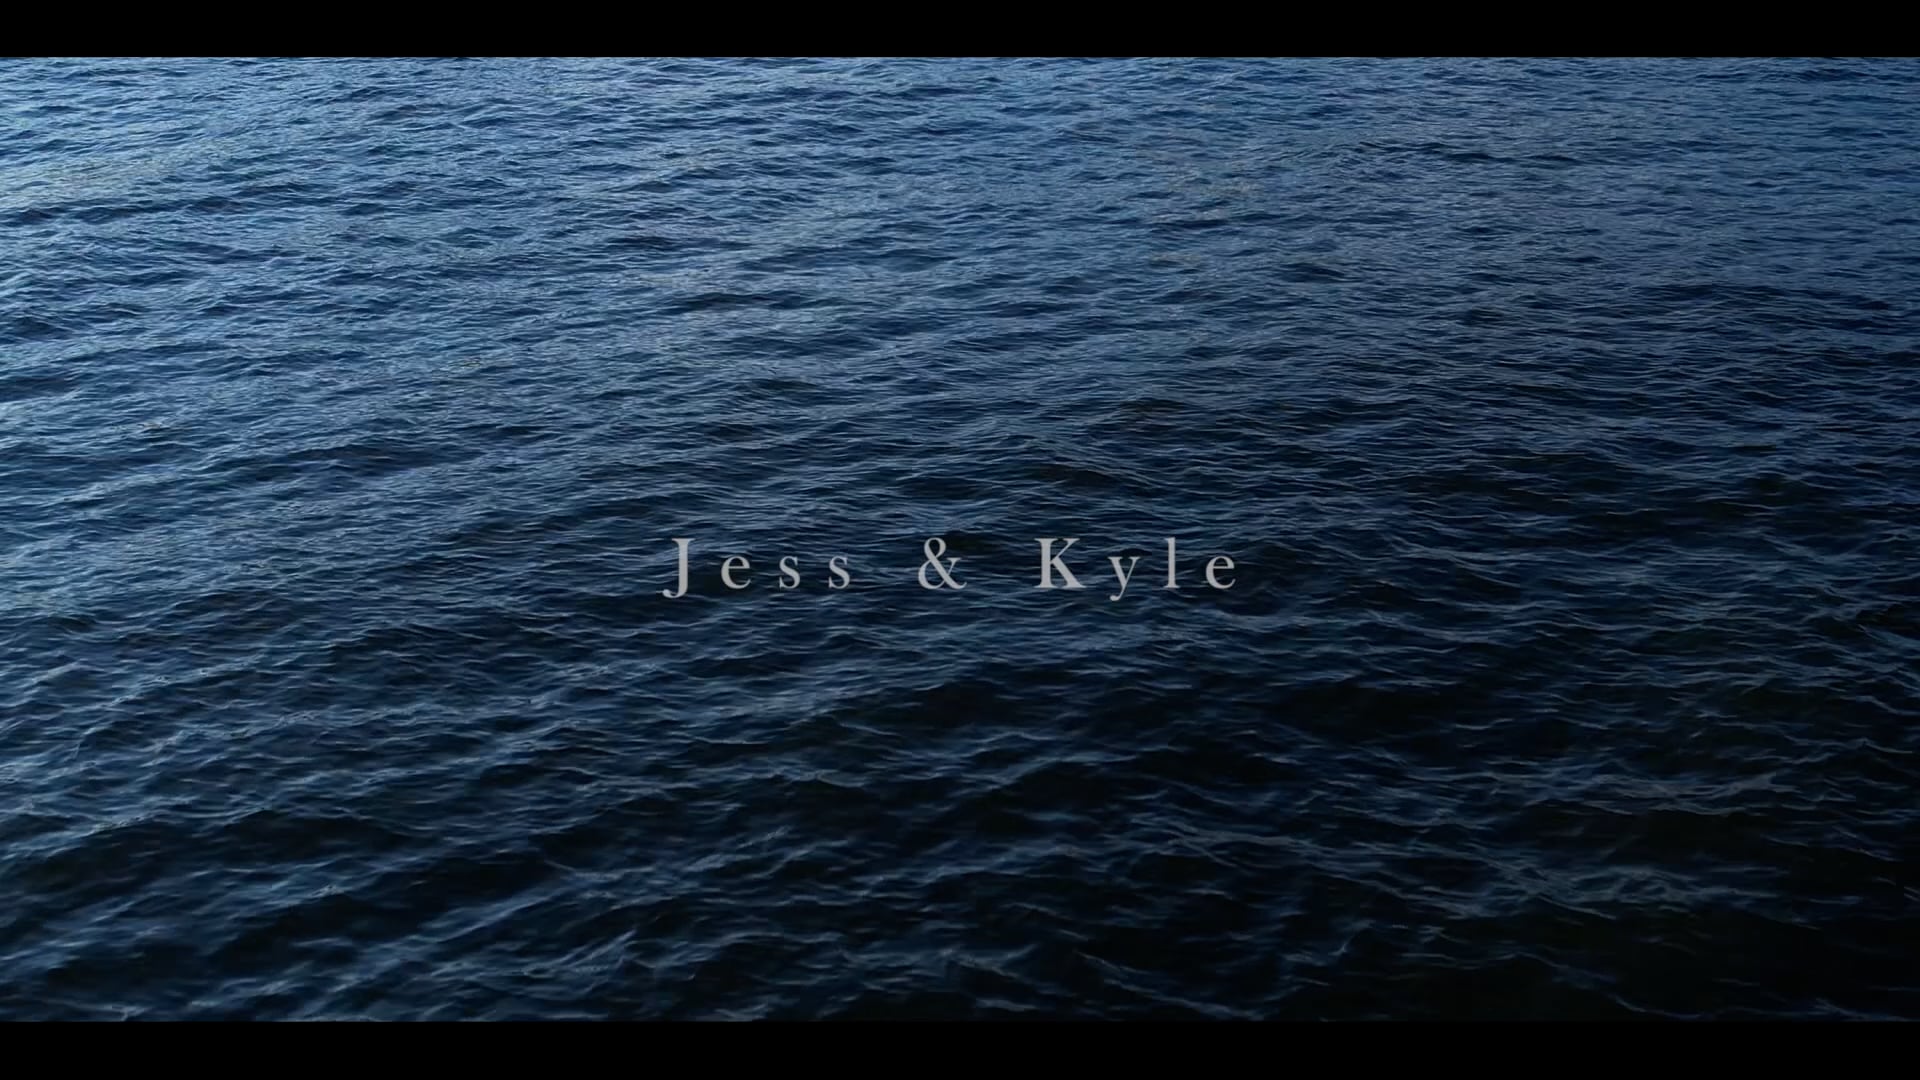 Jess & Kyle